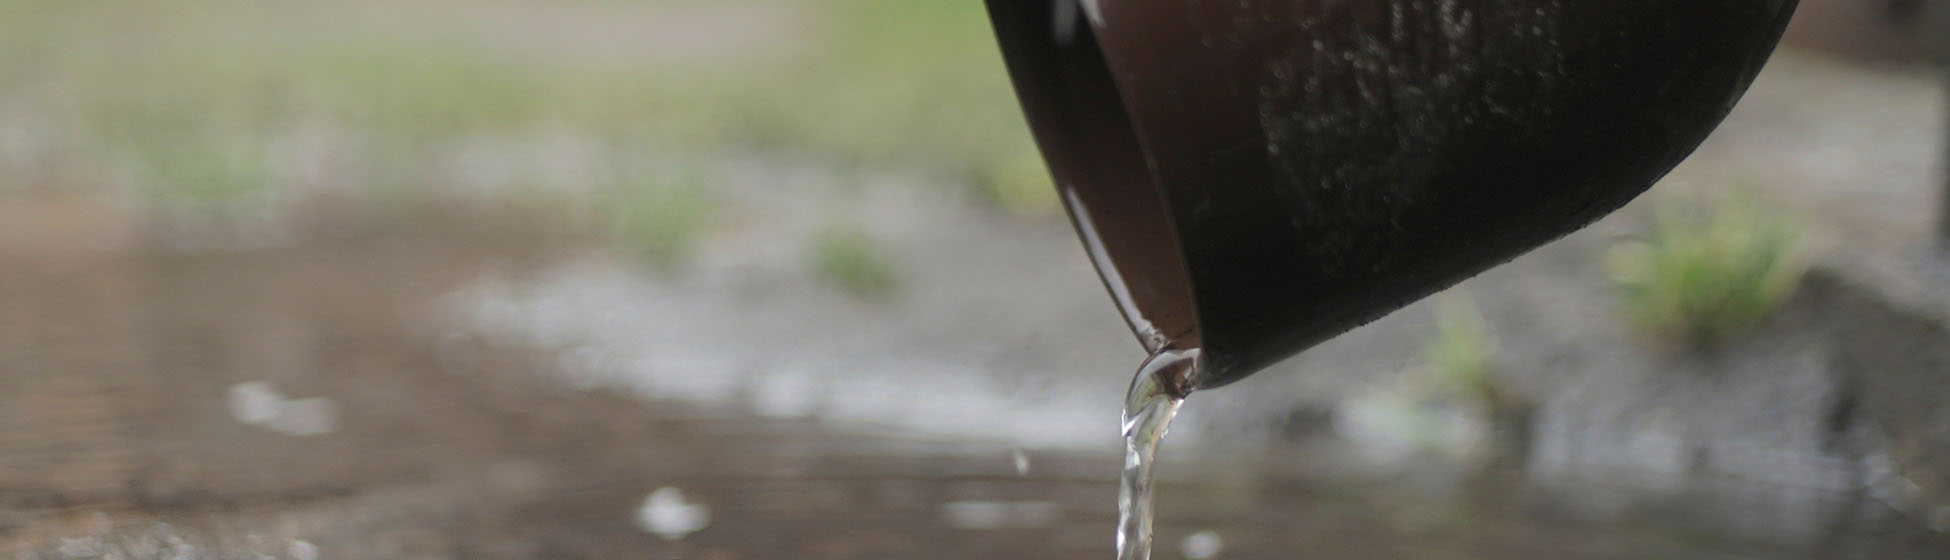 Installer une cuve de récupération d eau de pluie enterrée